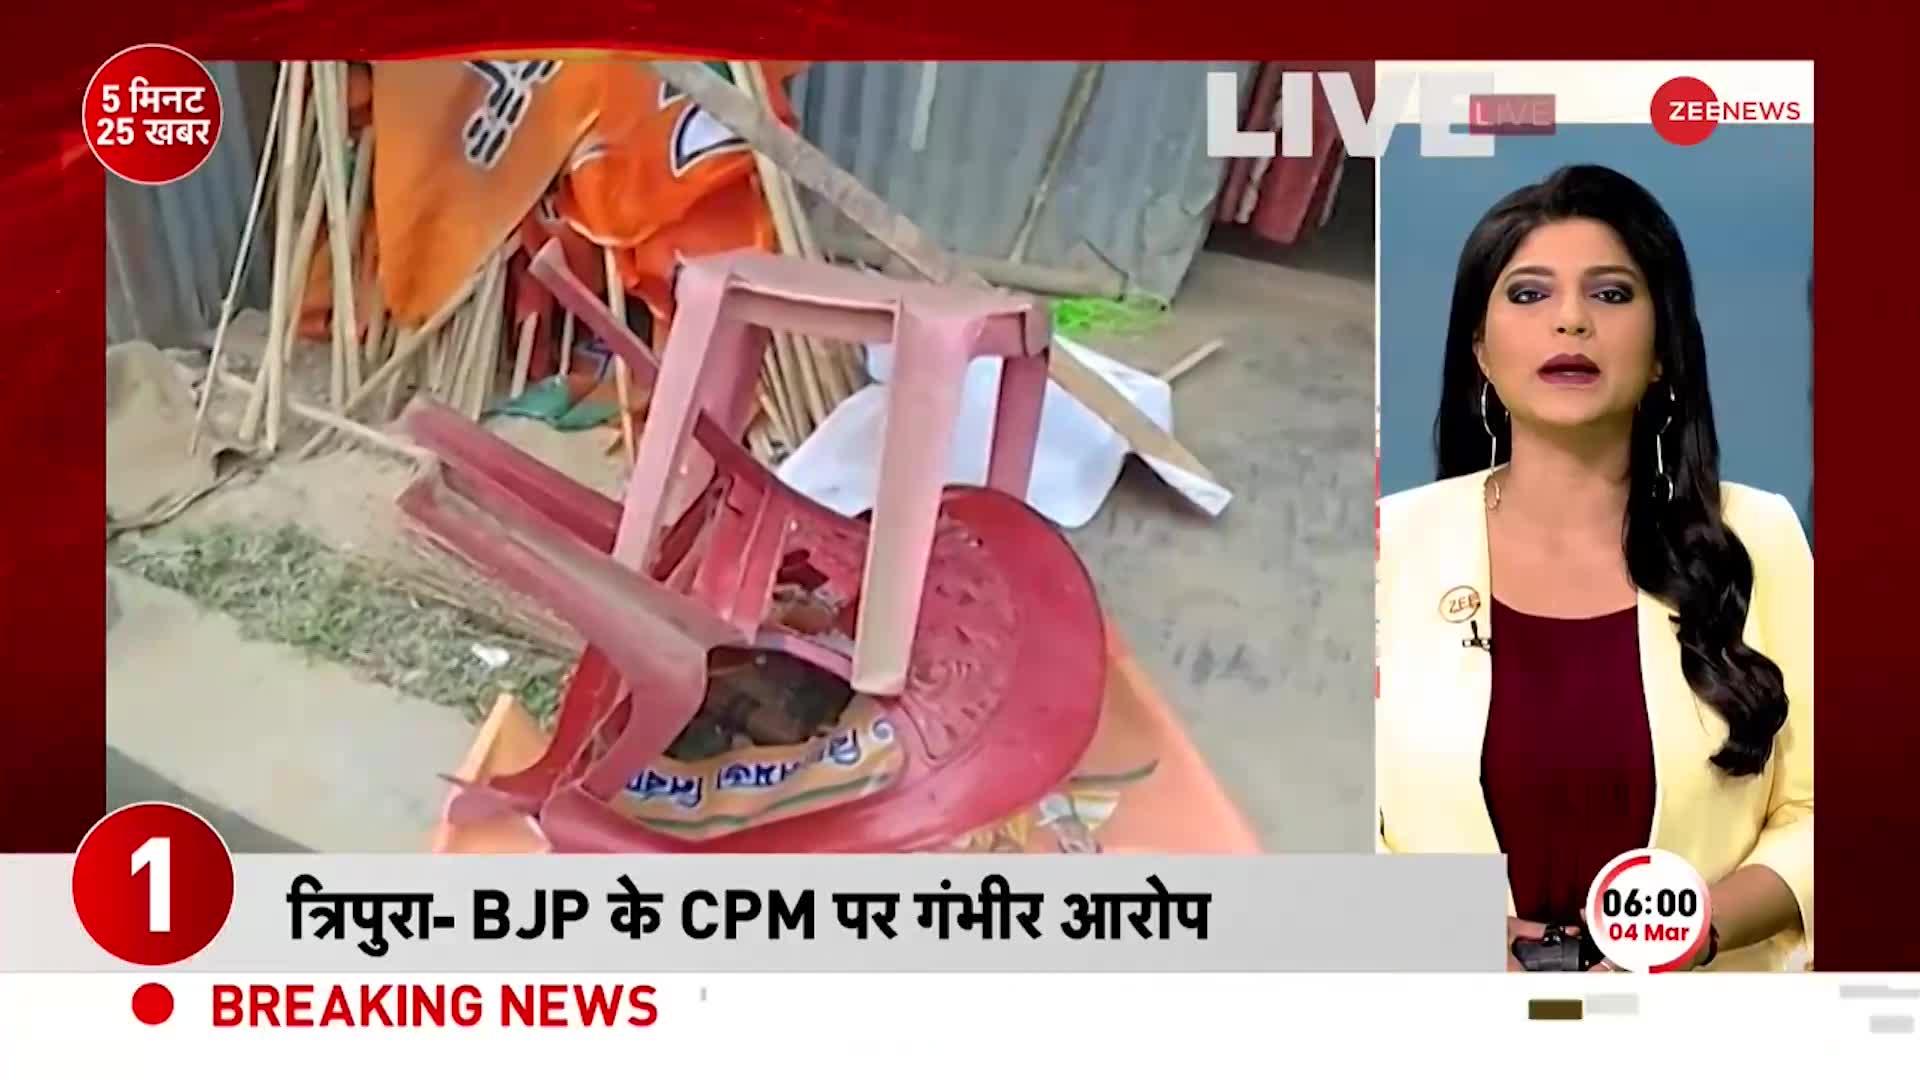 5 Minute 25 News: चुनावी नतीजे के बाद Tripura के कई हिस्सों में तनाव का माहौल, BJP दफ्तर में तोड़फोड़